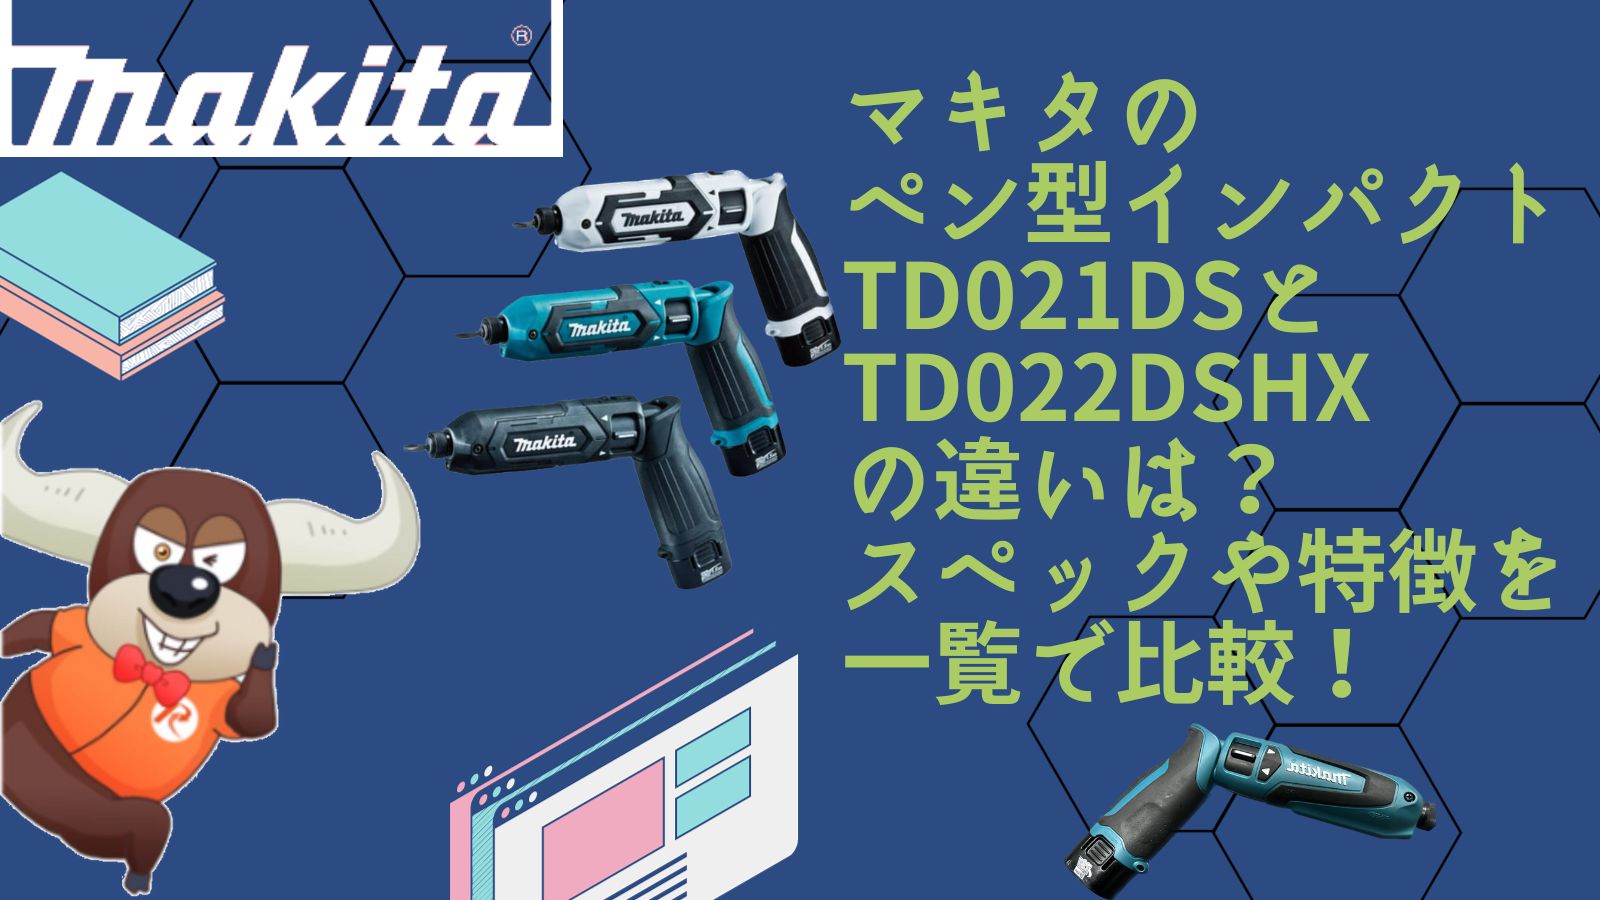 マキタのペン型インパクトドライバーTD021DSとTD022DSHXの違いを解説 